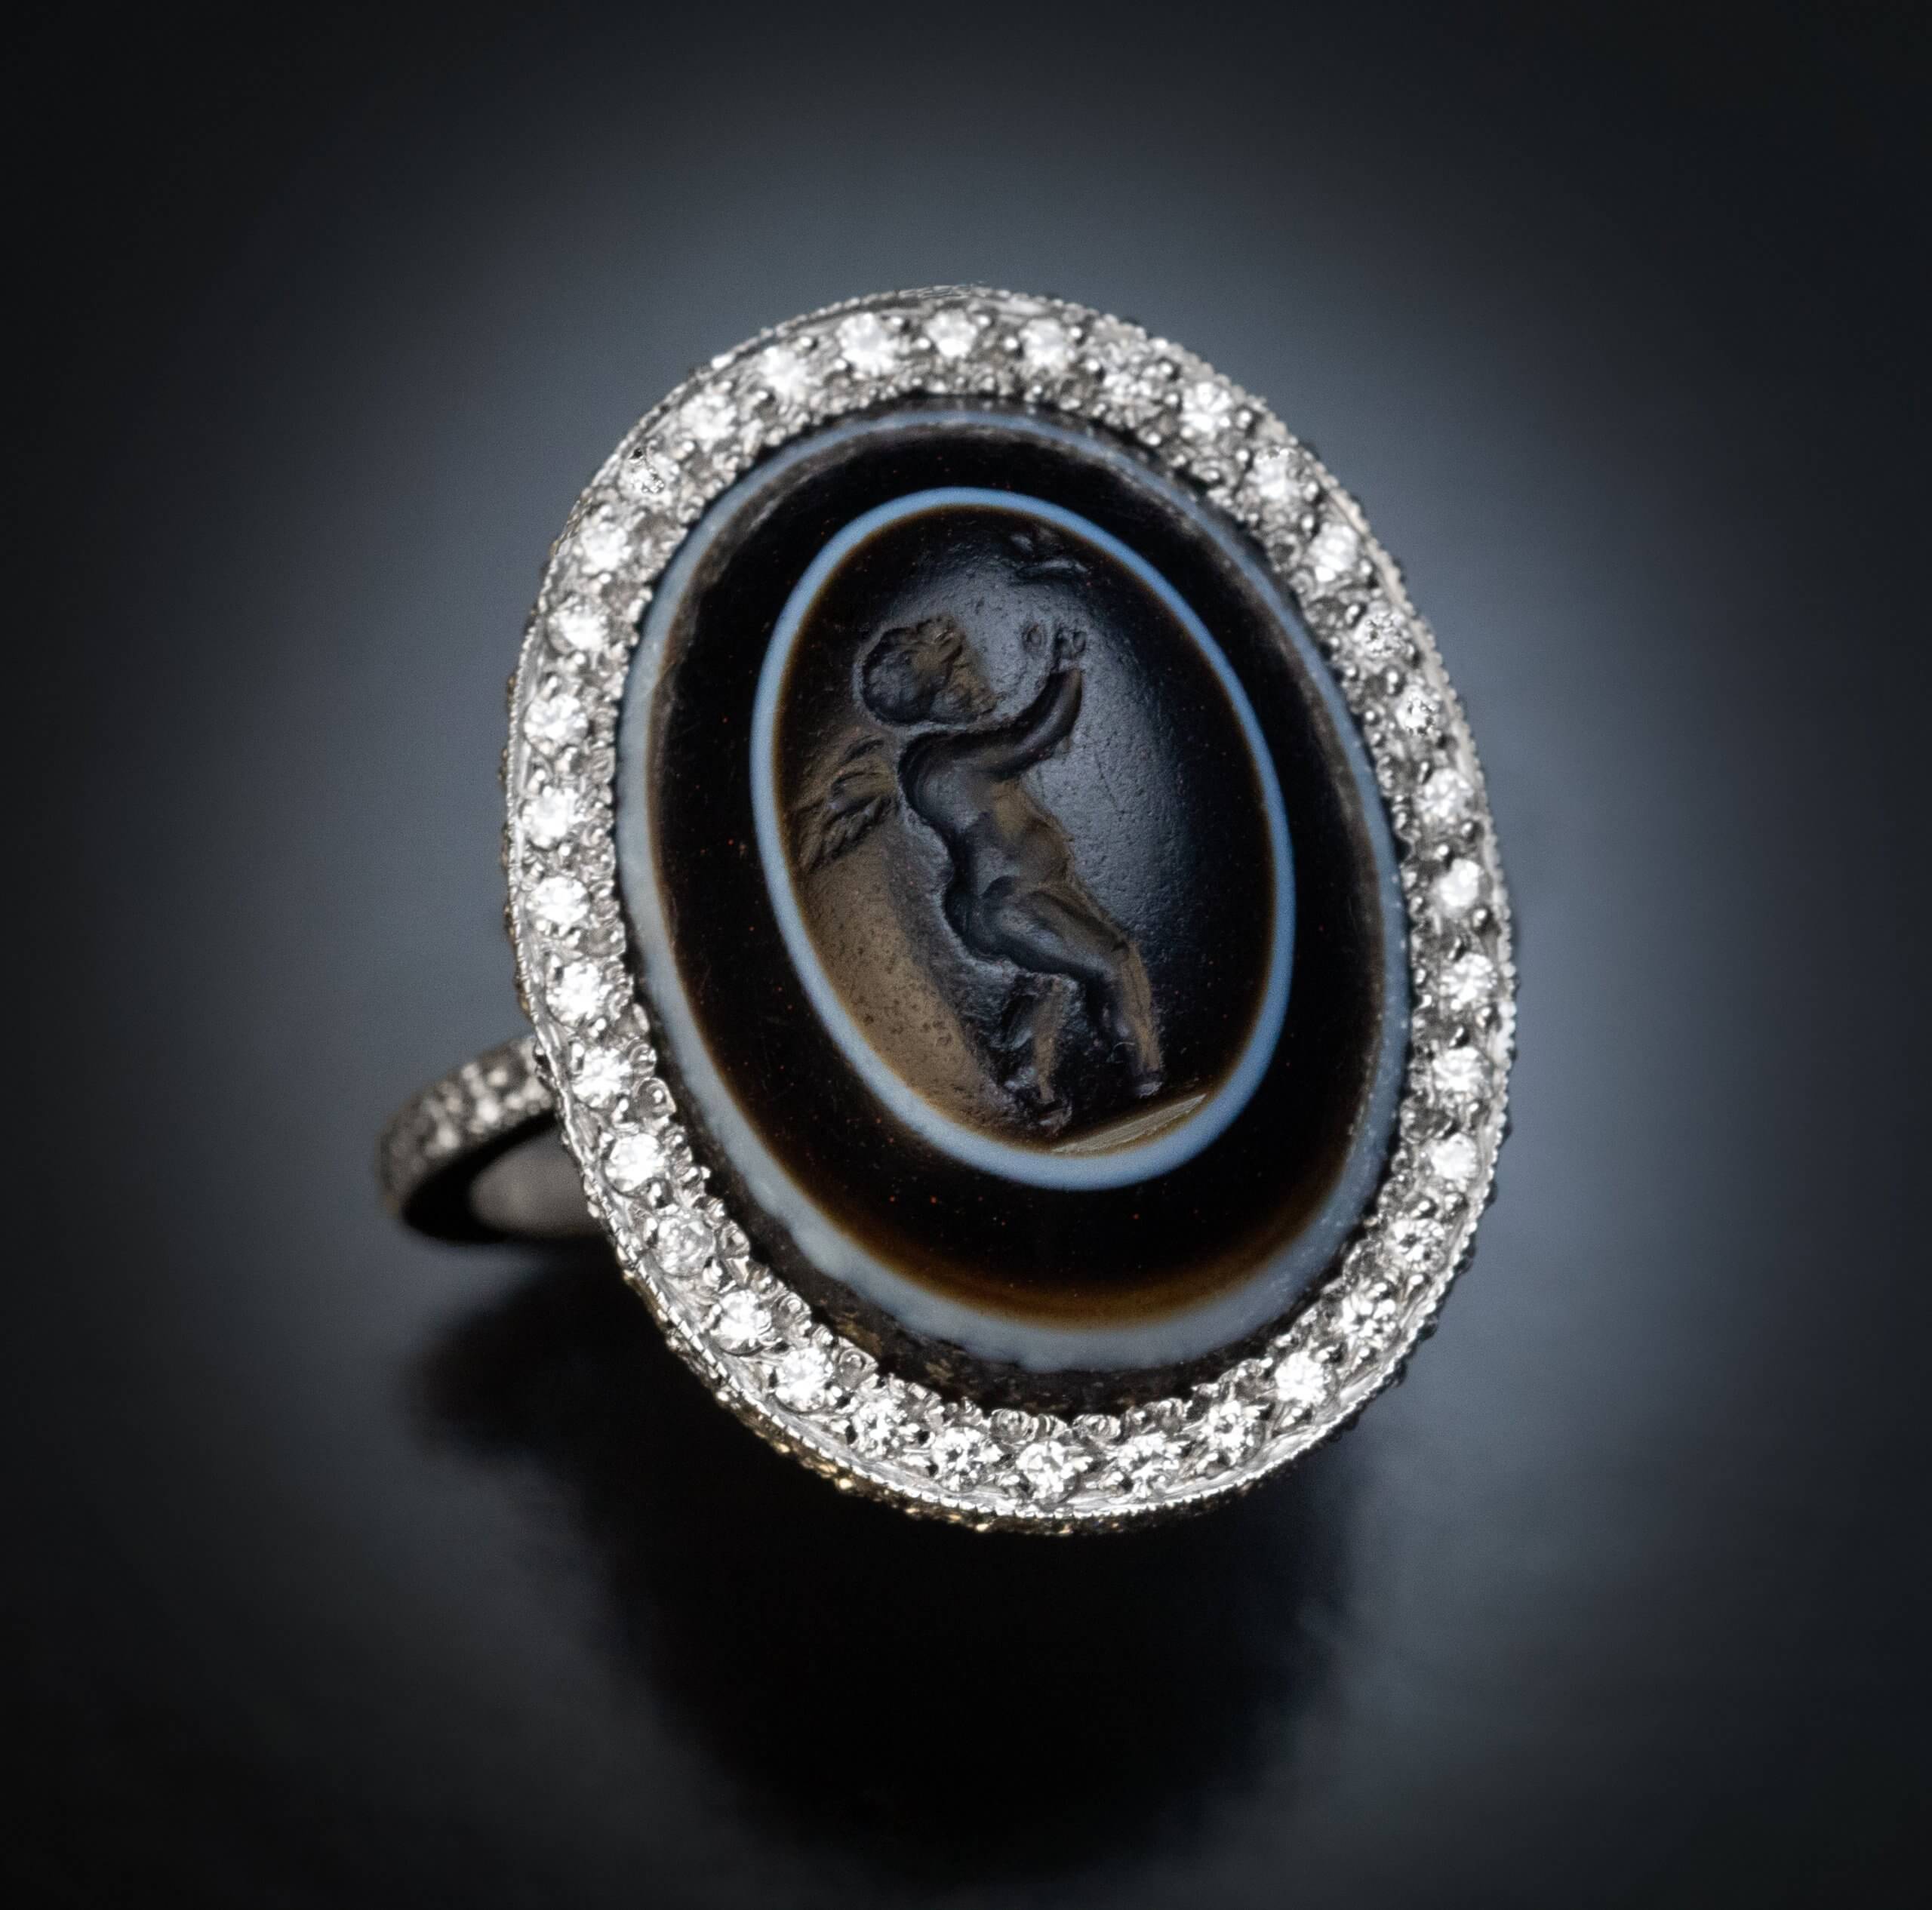 Unique Ancient Roman Intaglio Engagement Ring Ref: 981456 - Antique ...